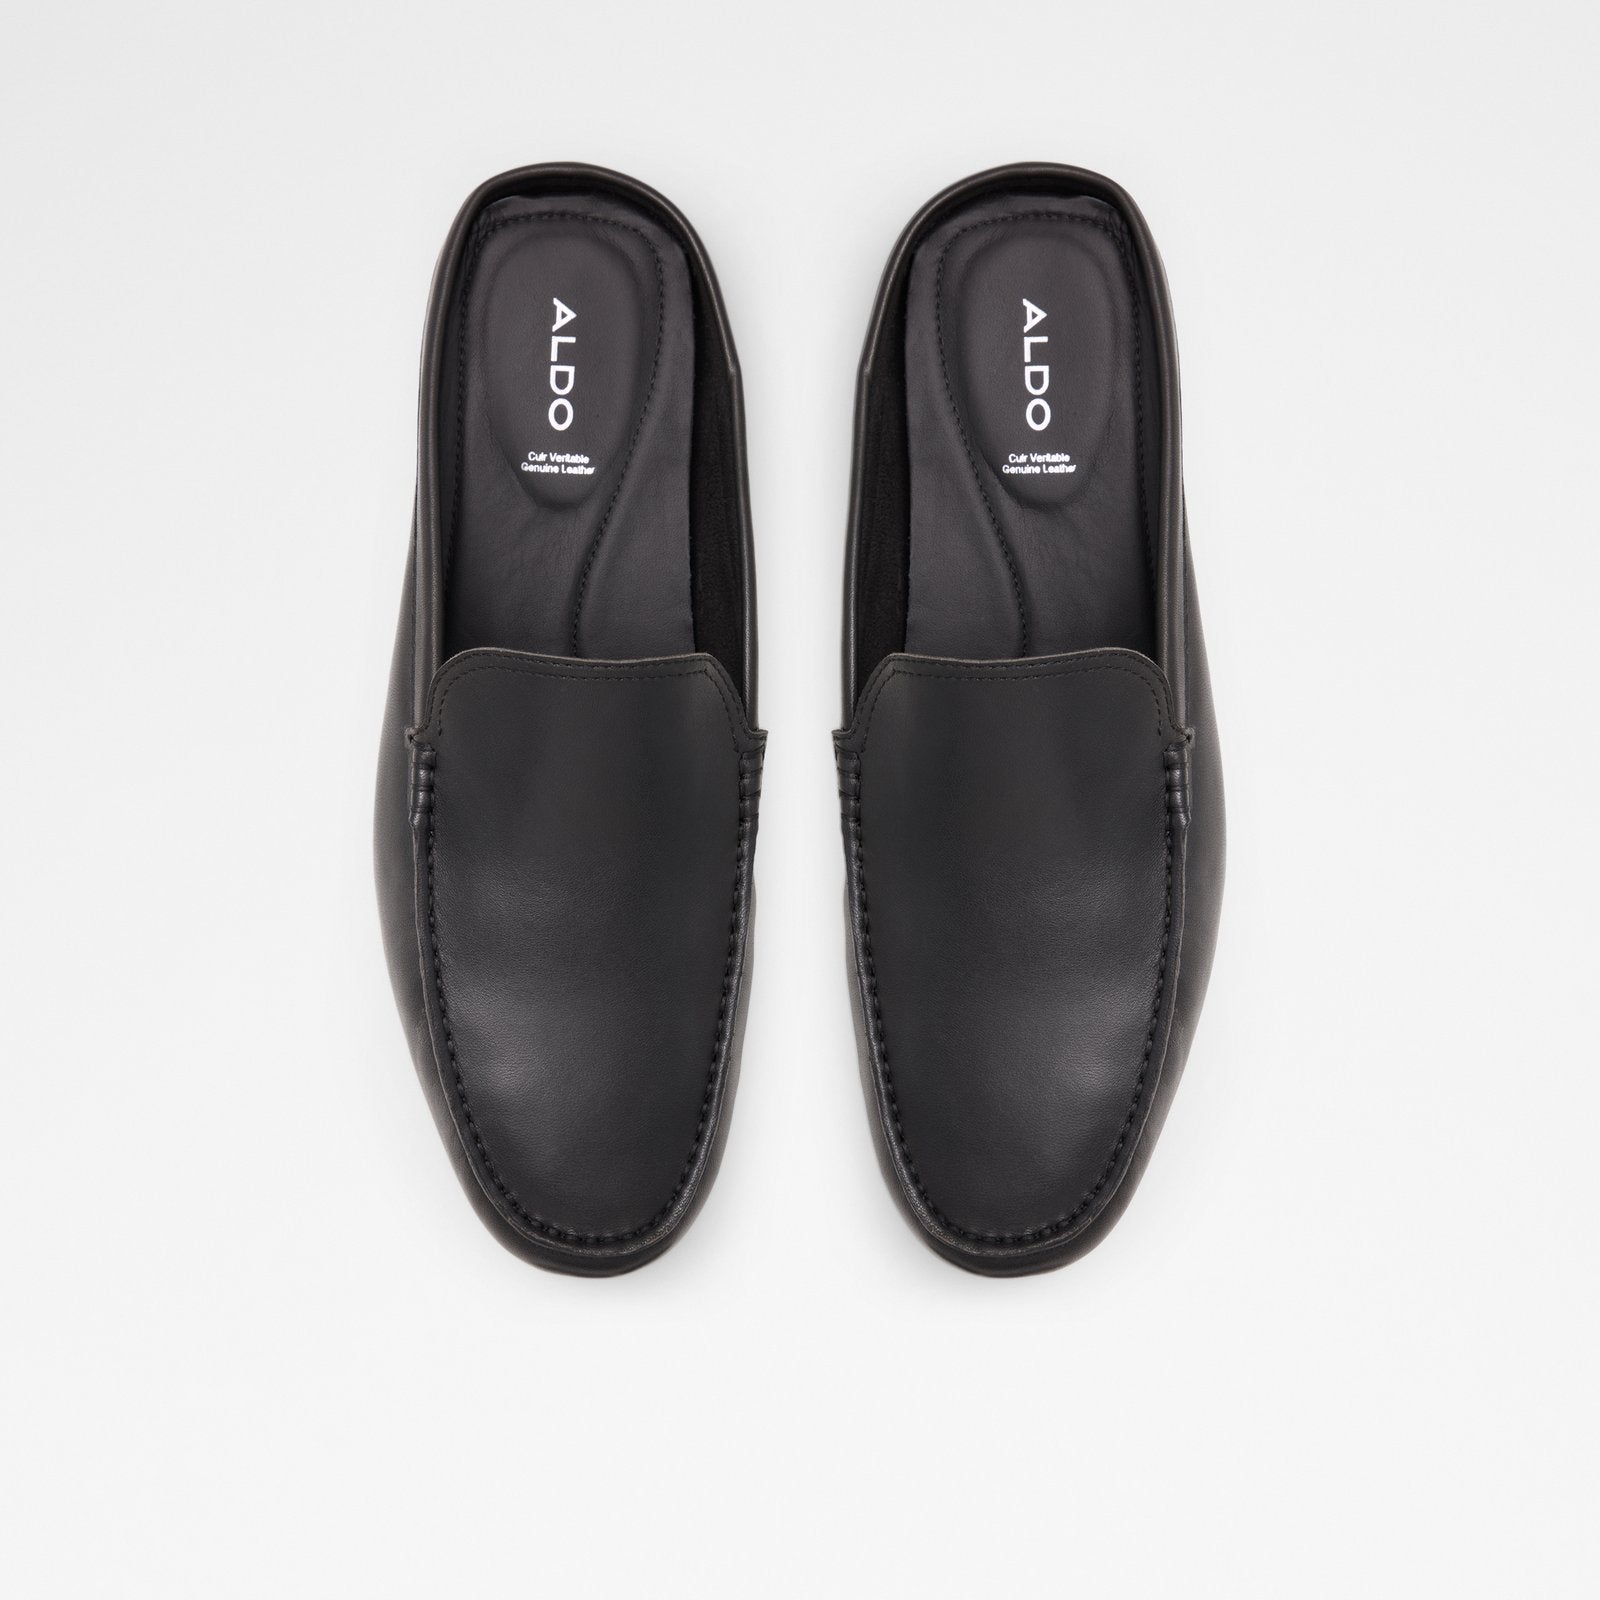 Sereno Men Shoes - Black - ALDO KSA